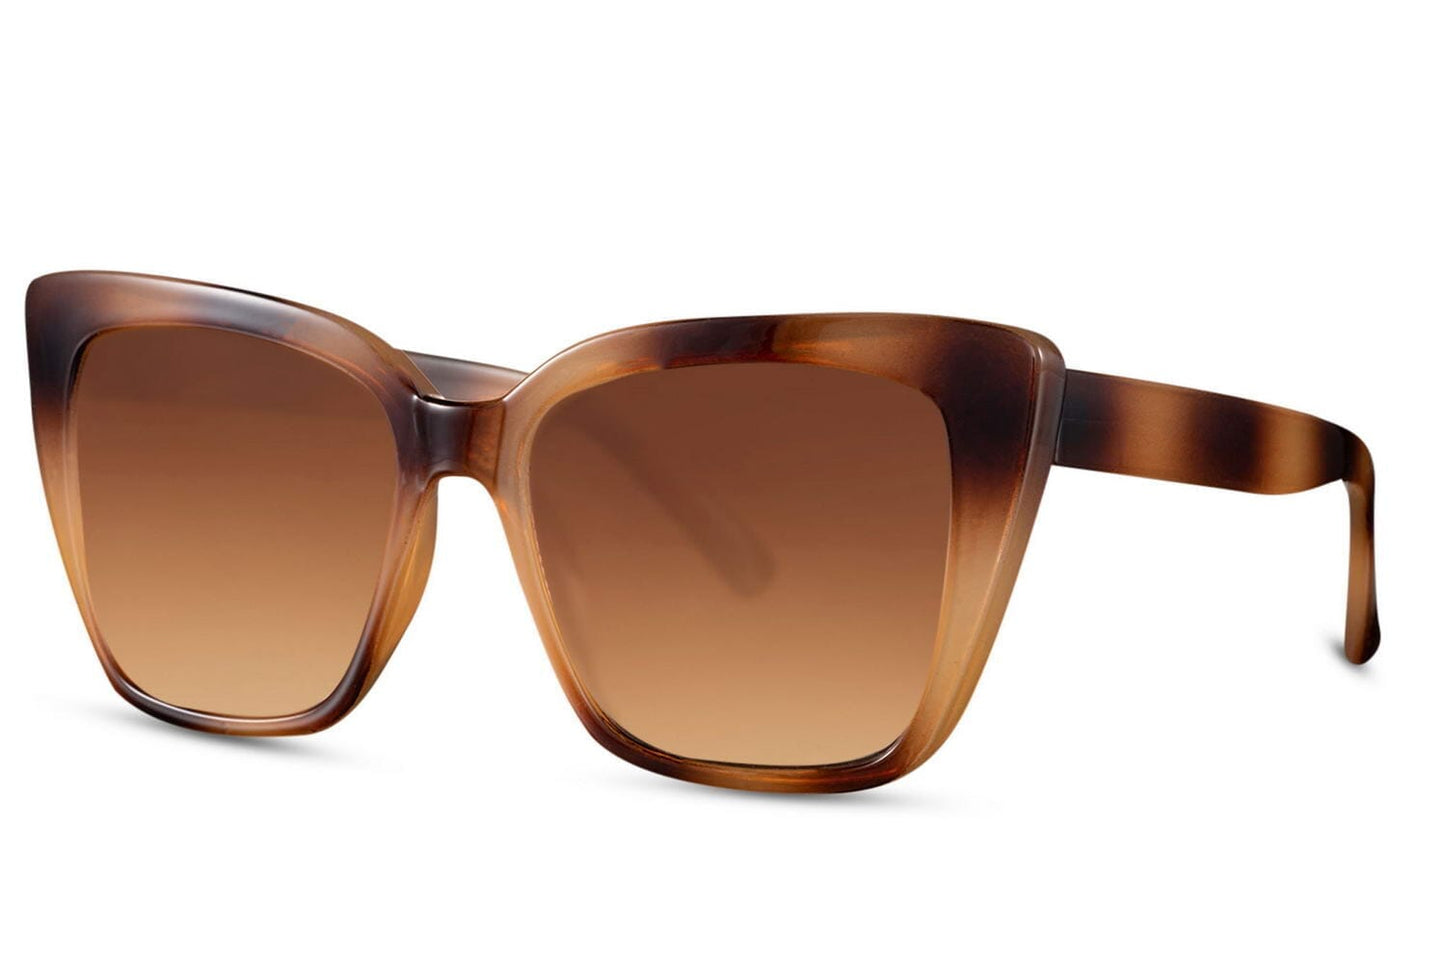 Flat top cat eye sunglasses. UV400 protected.